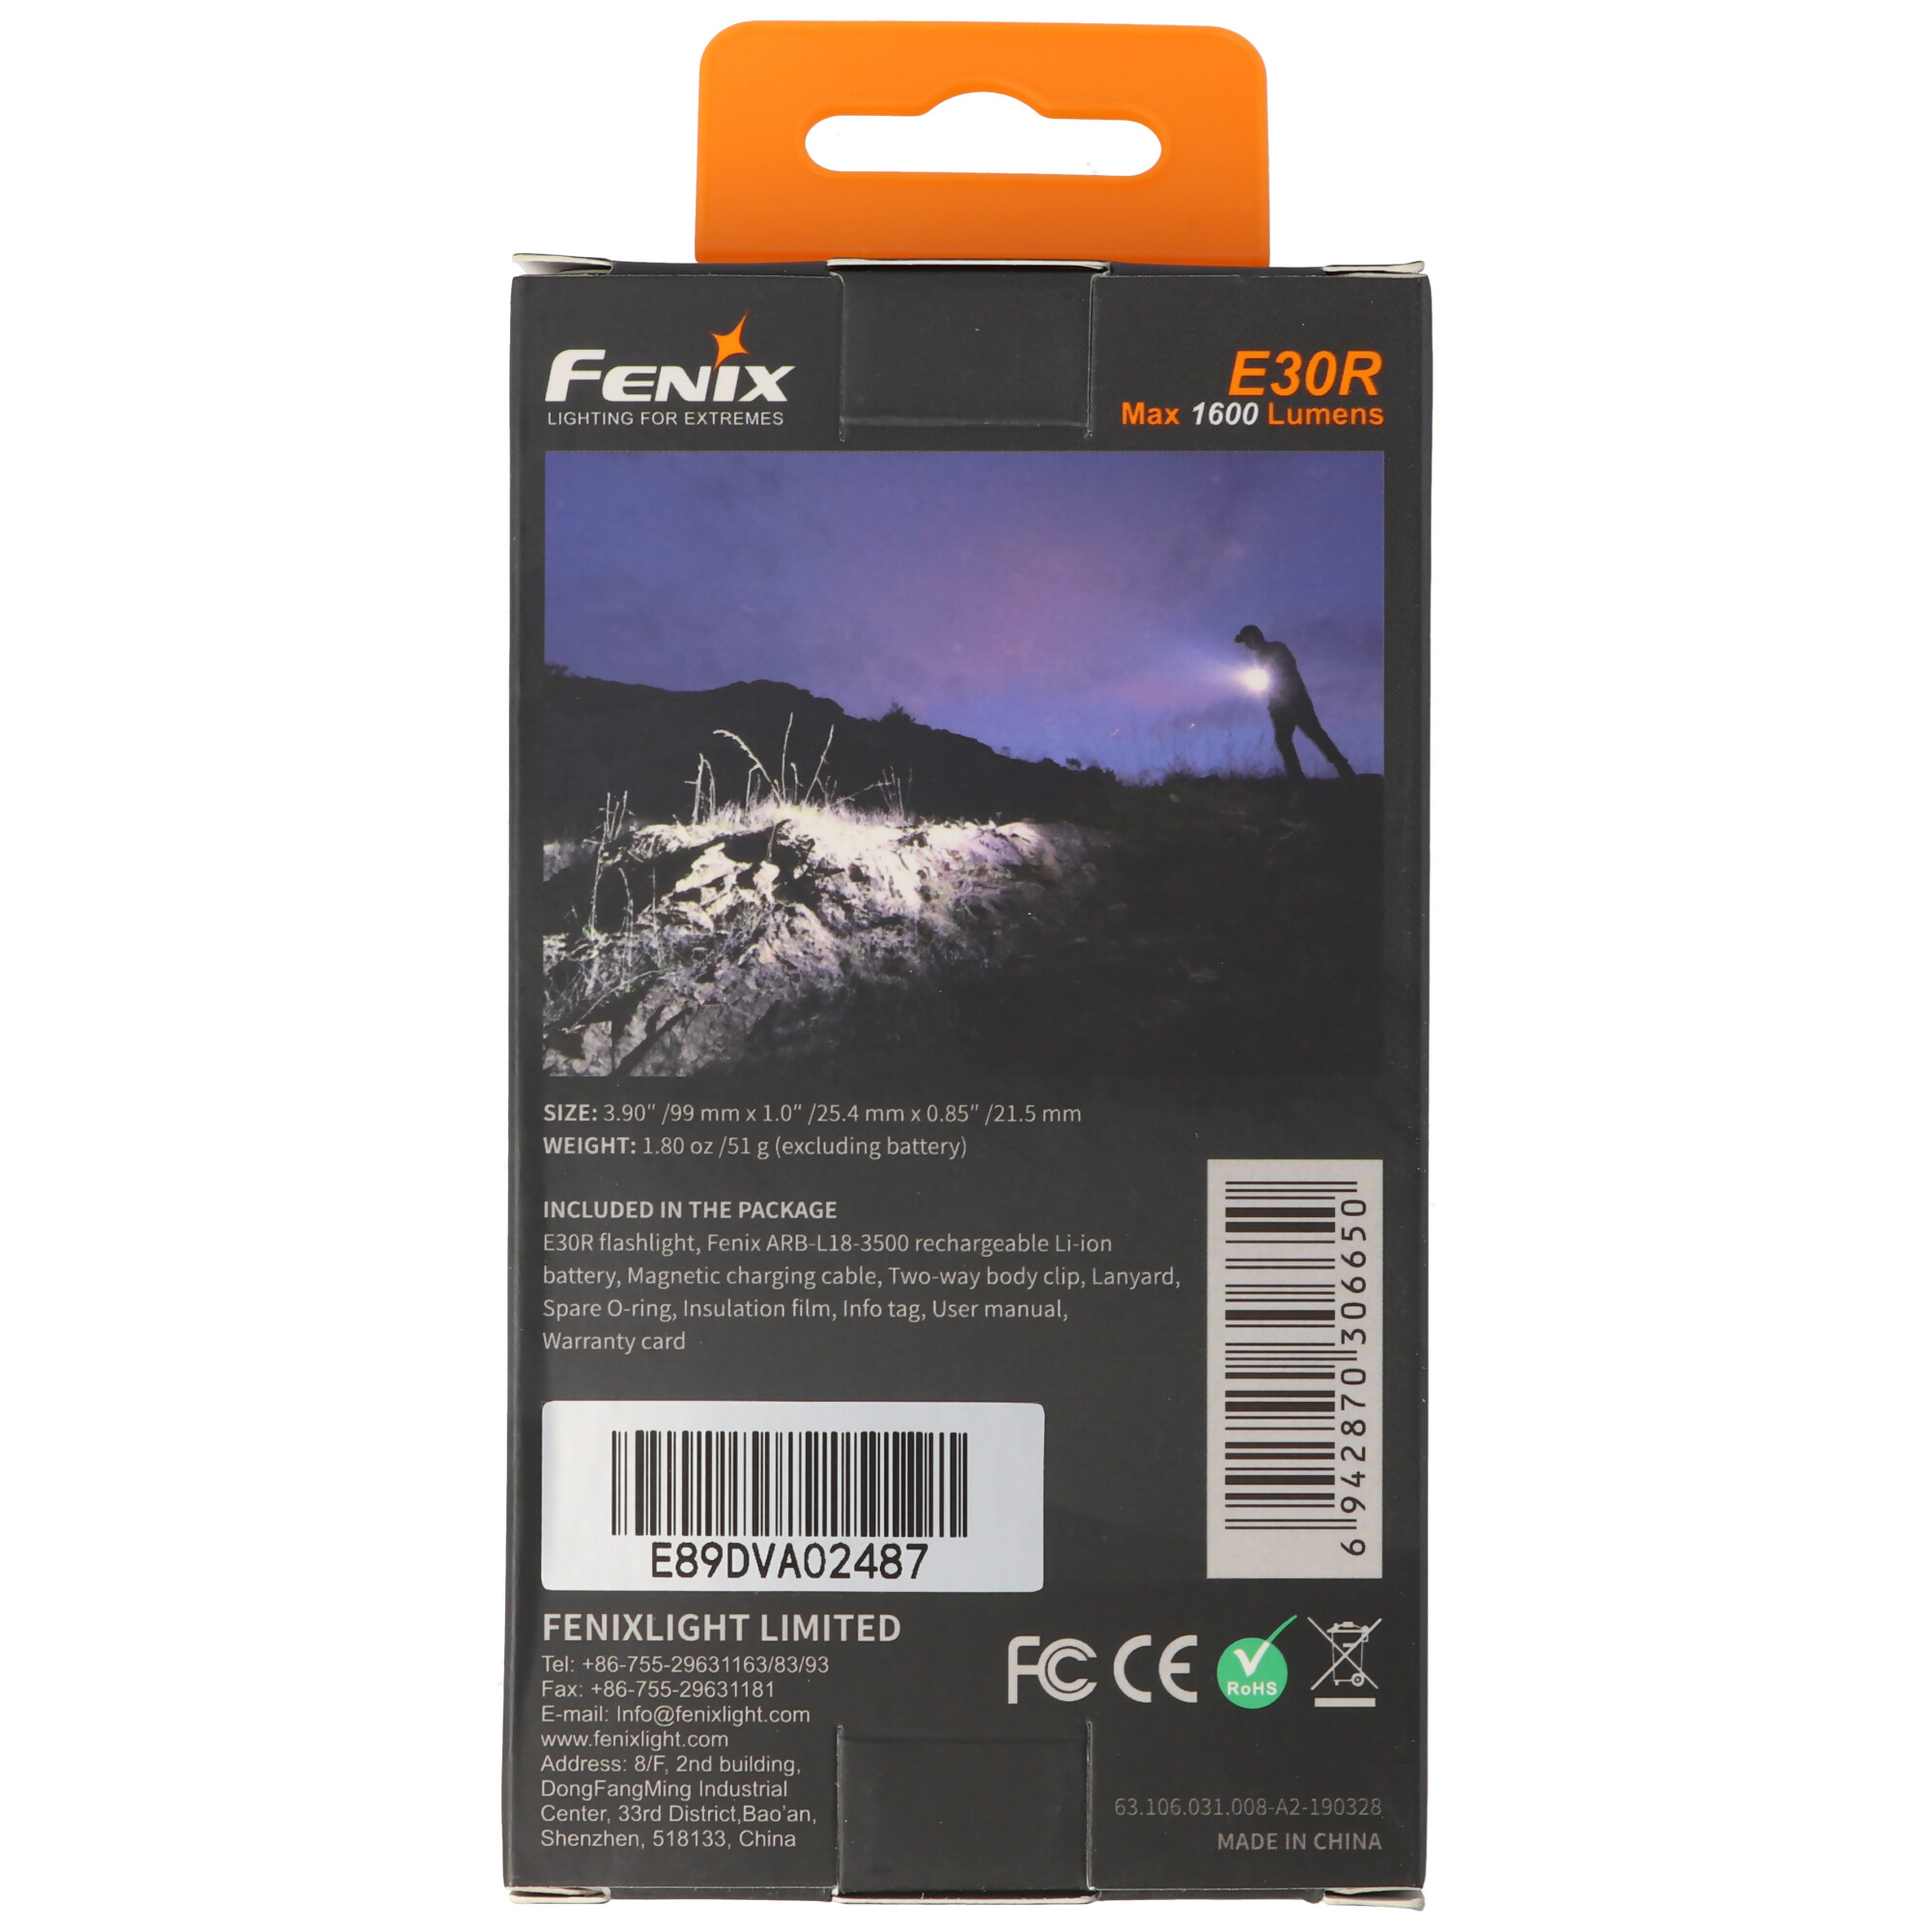 Fenix E30R LED Taschenlampe mit bis zu 1600Lumen, inklusive 3500mAh Akku und Magnetladekabel